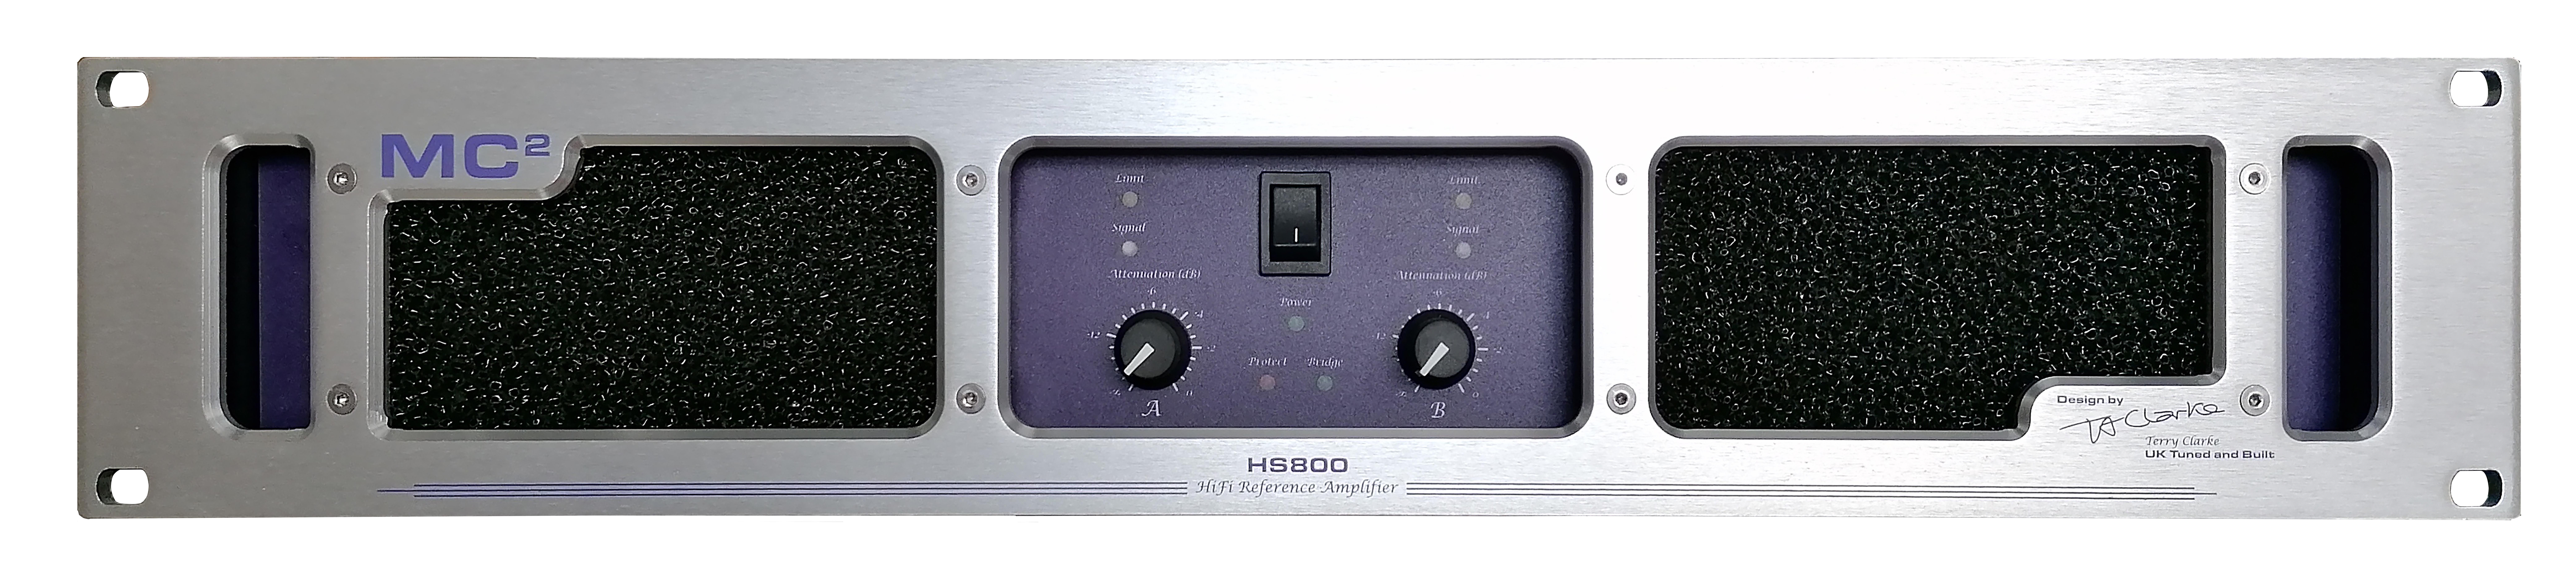 HS800-E